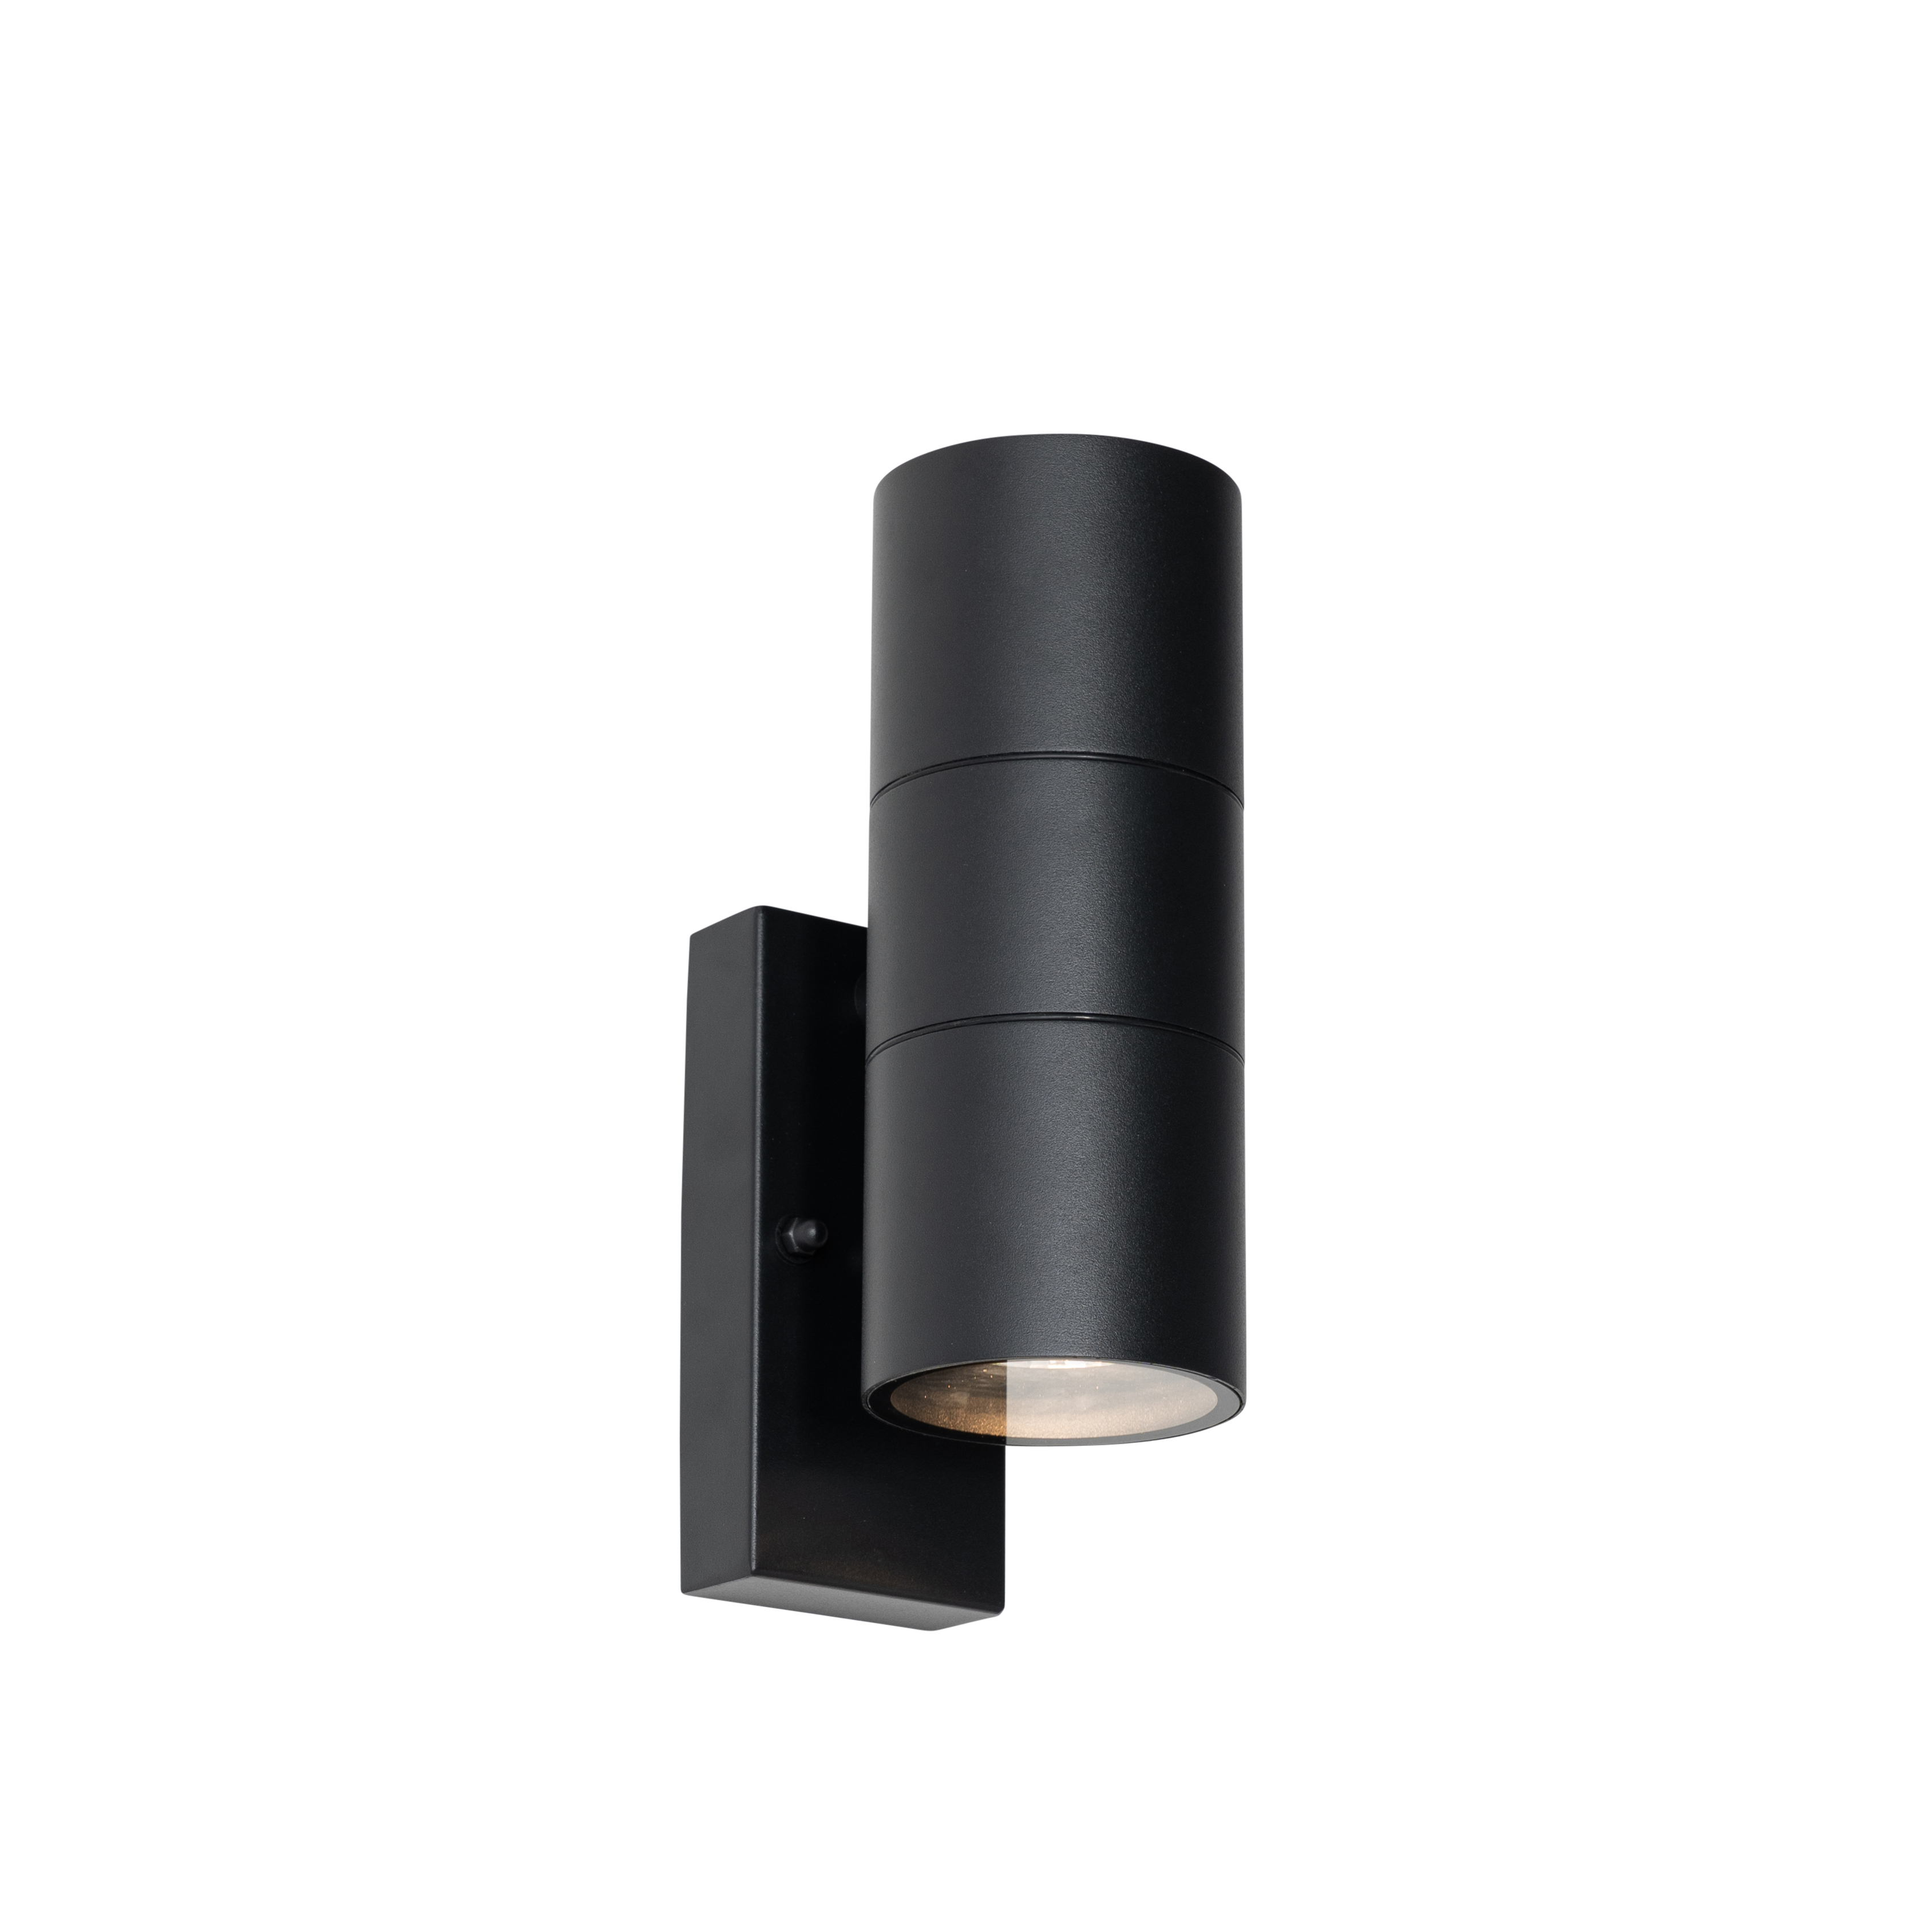 Kültéri fali lámpa fekete 2 fényes AR70 világos-sötétség érzékelővel - Duo